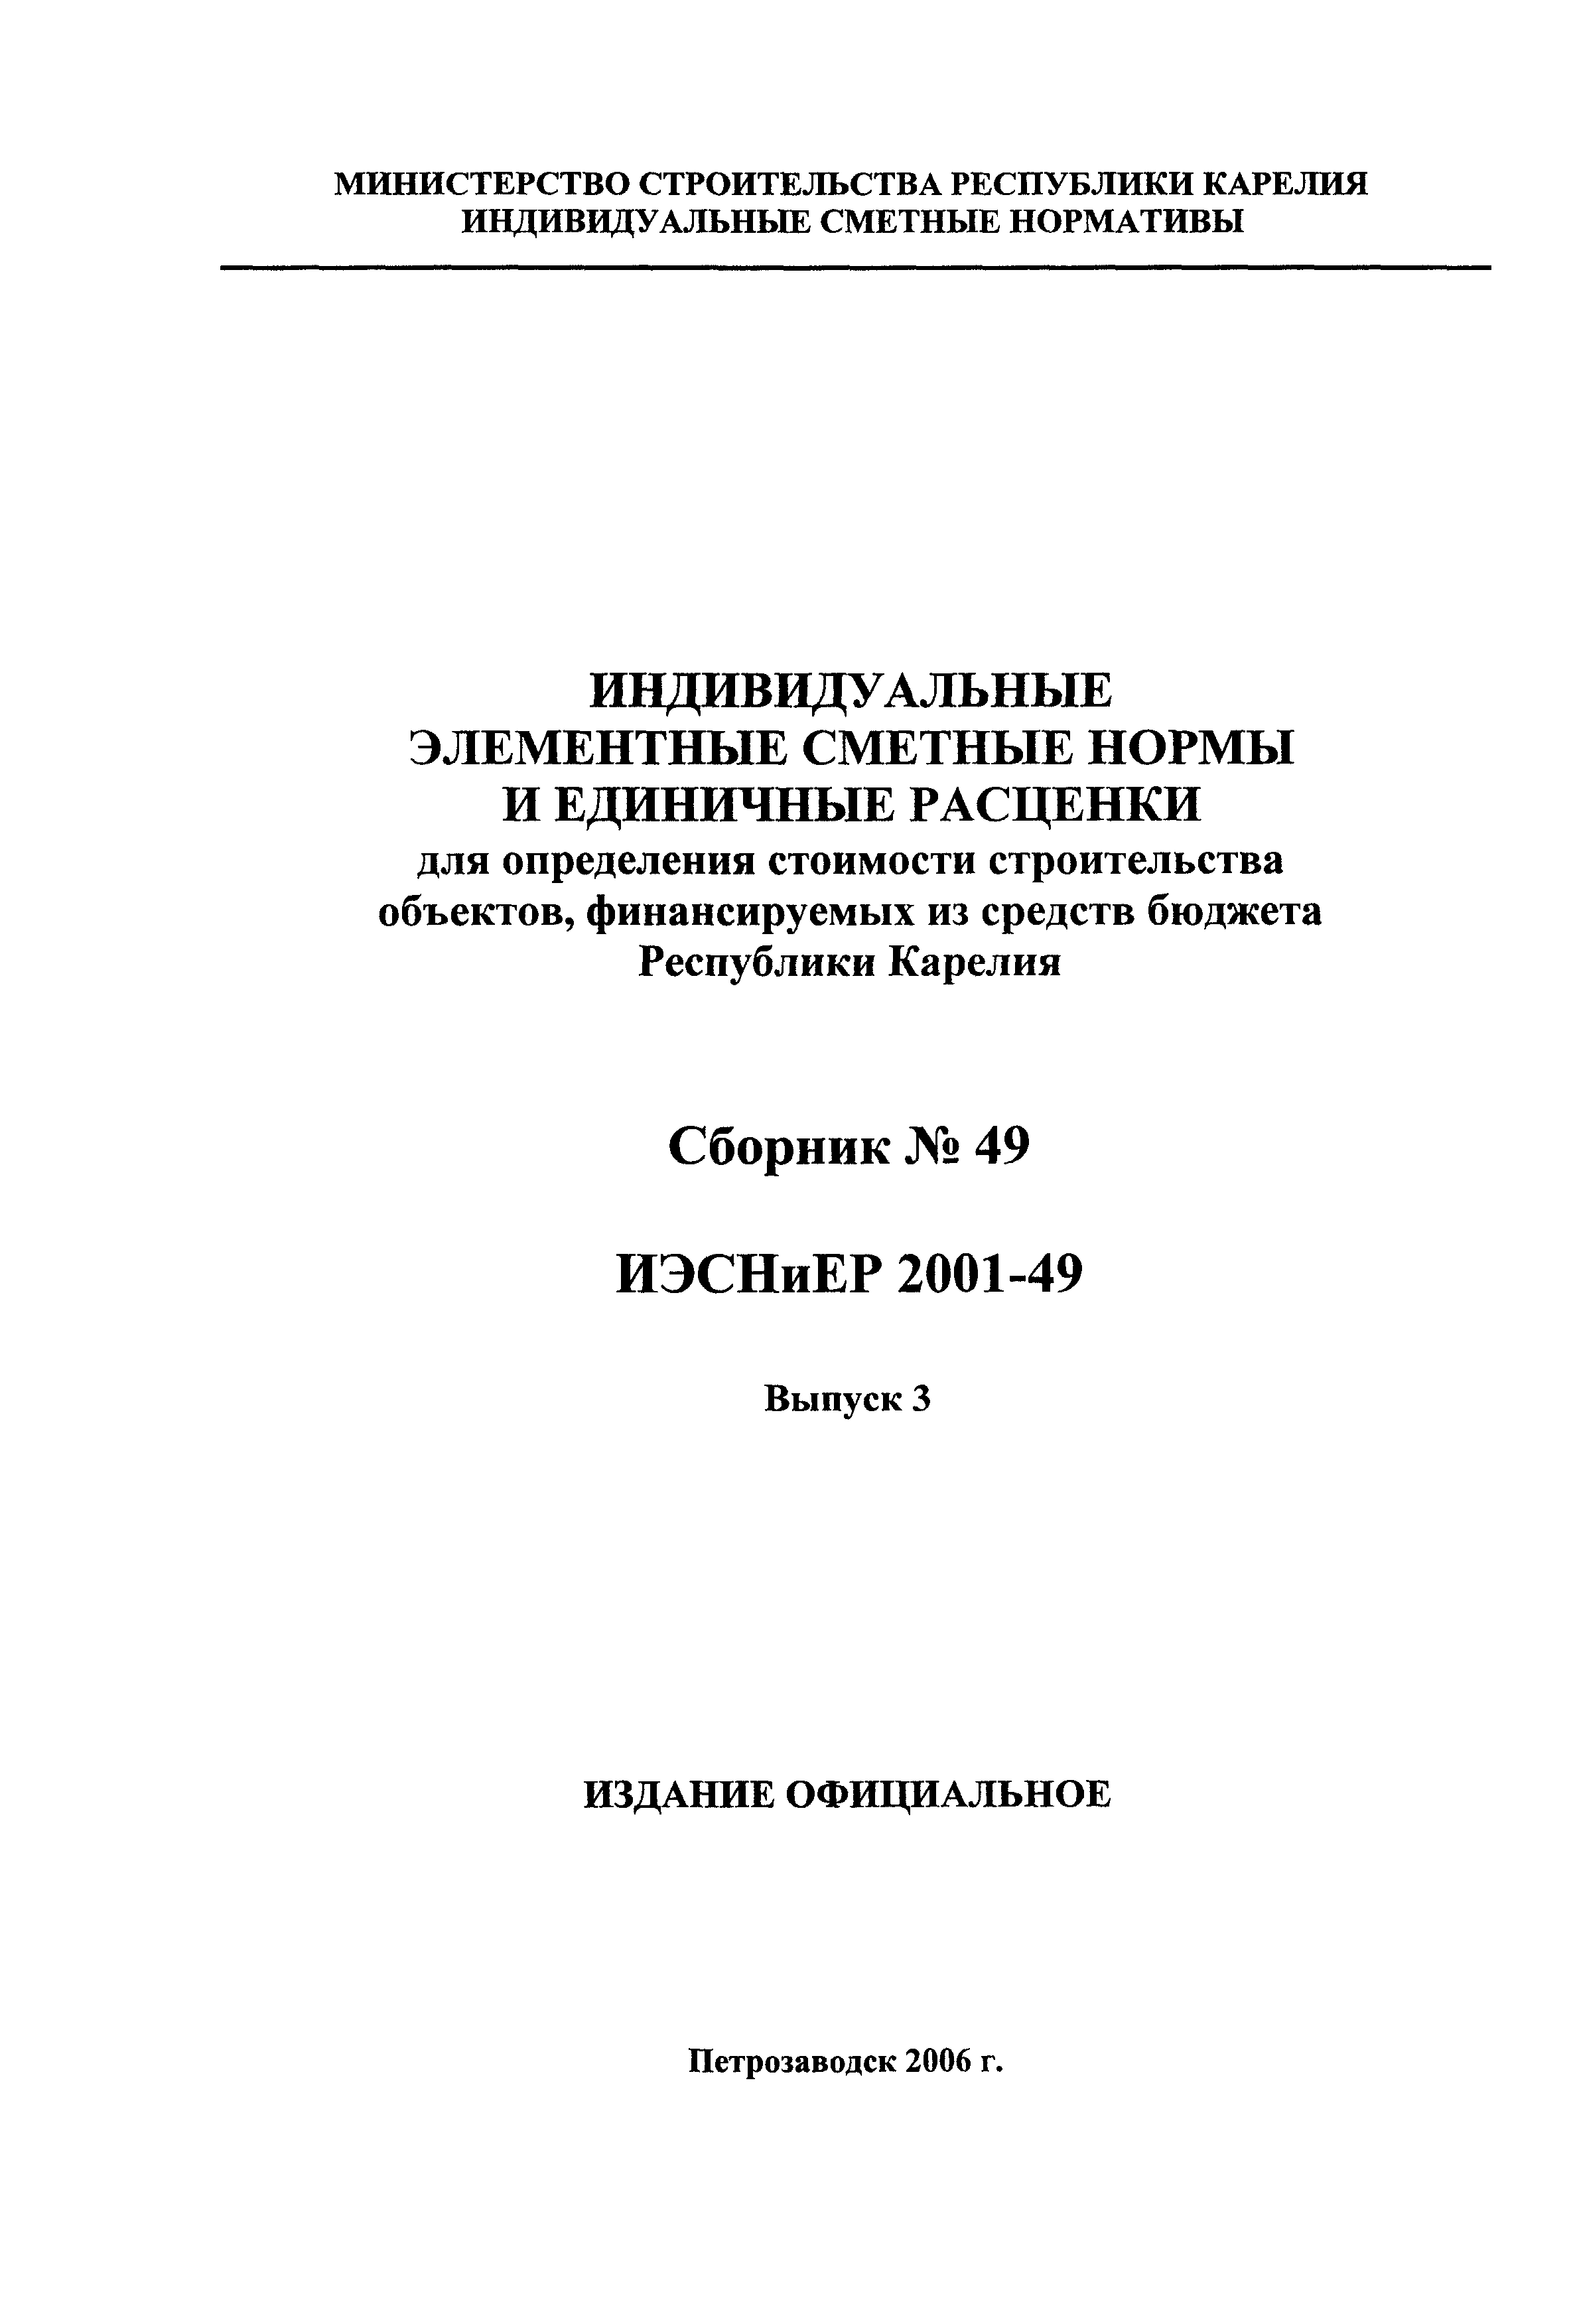 ИЭСНиЕР Республика Карелия 2001-49